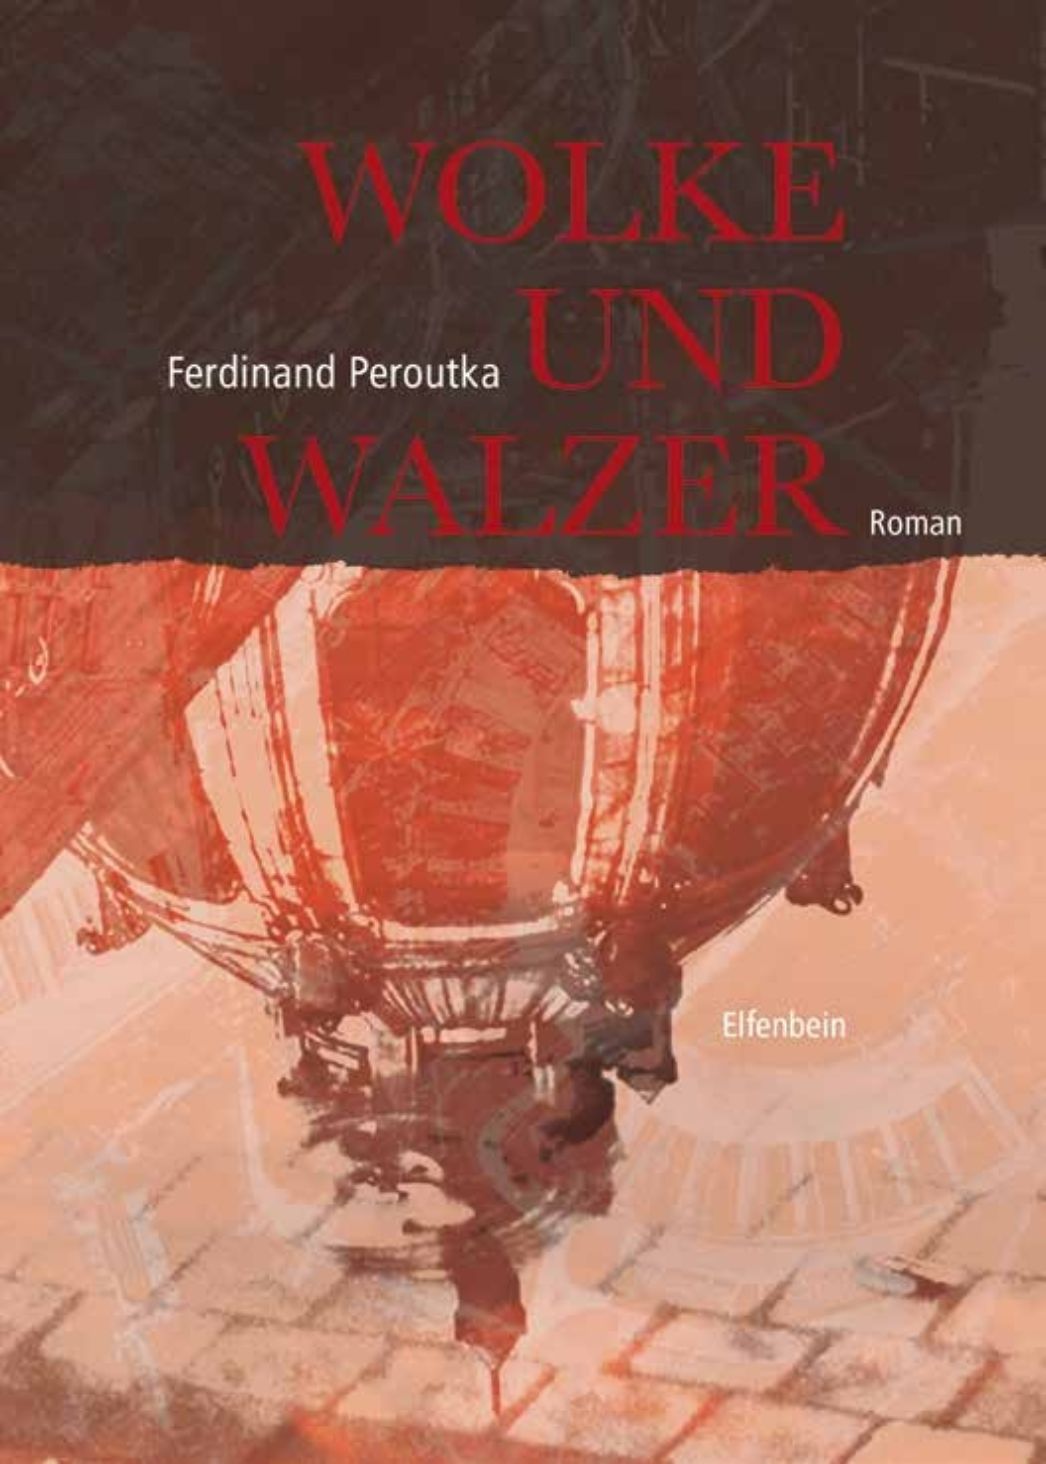 Buchcover: Oben Titel "Wolke und Walzer", unten Bild von einem Gebäude, das sich in einer Pfütze spiegelt